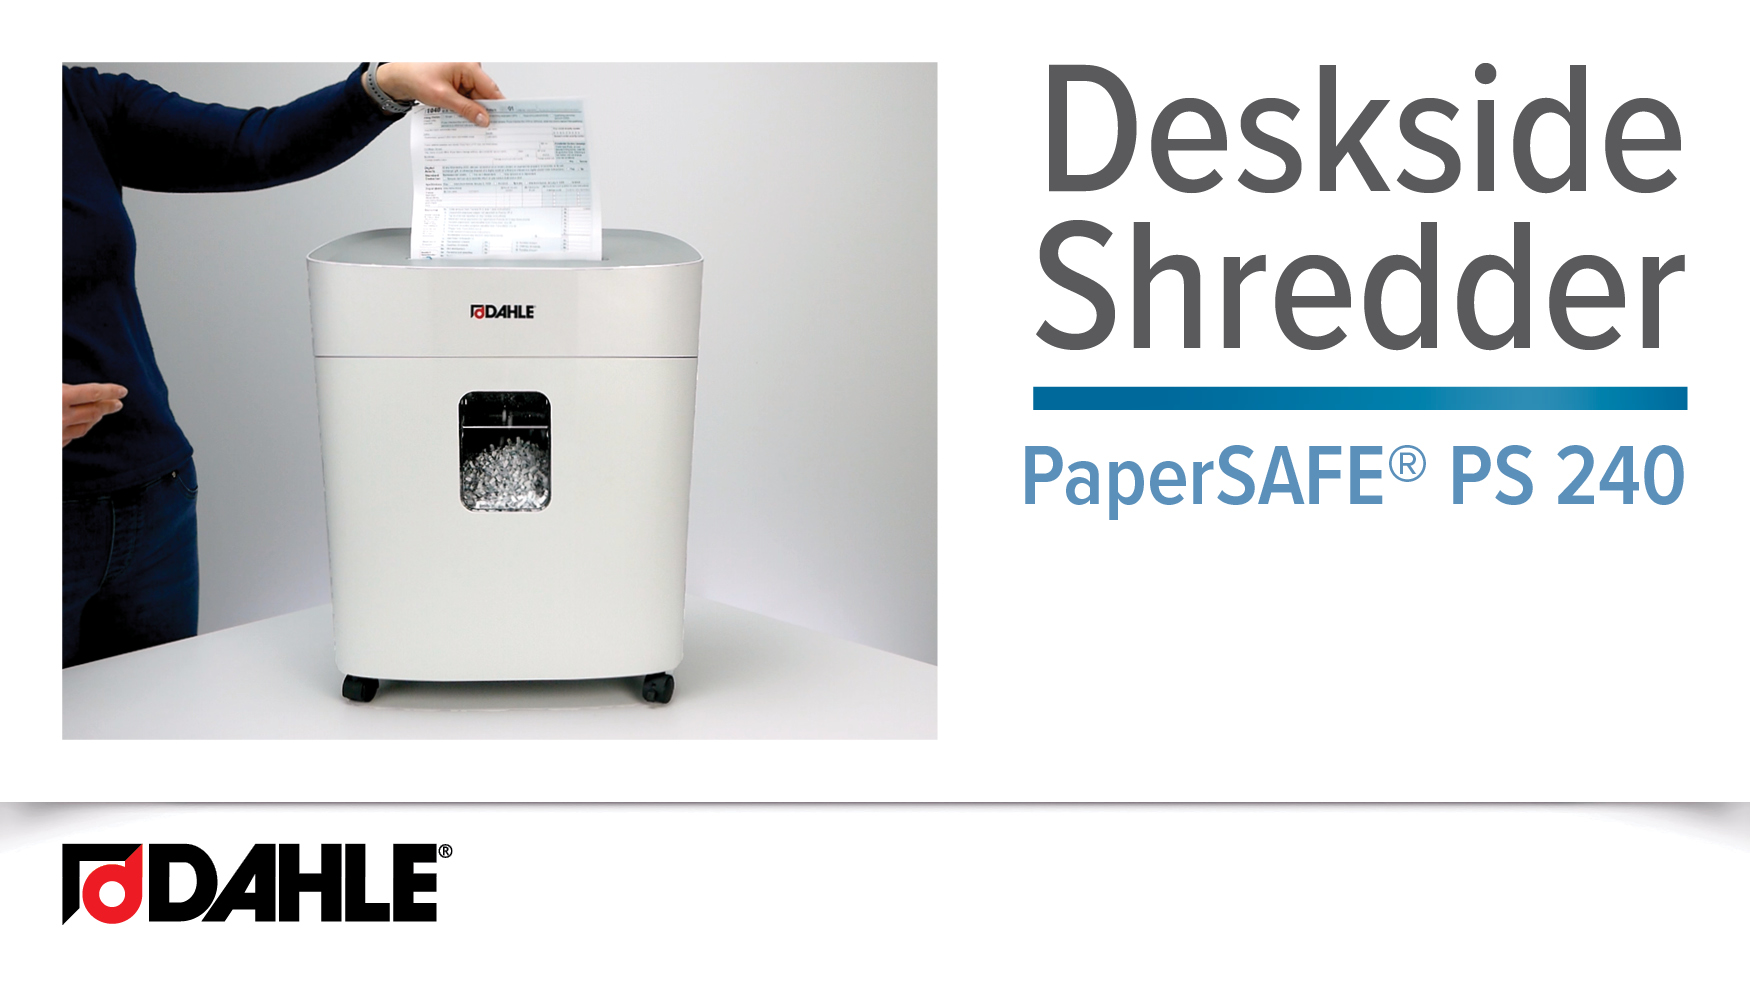 <big><strong>PaperSAFE® PS 240 </strong></big><br>Deskside Shredder